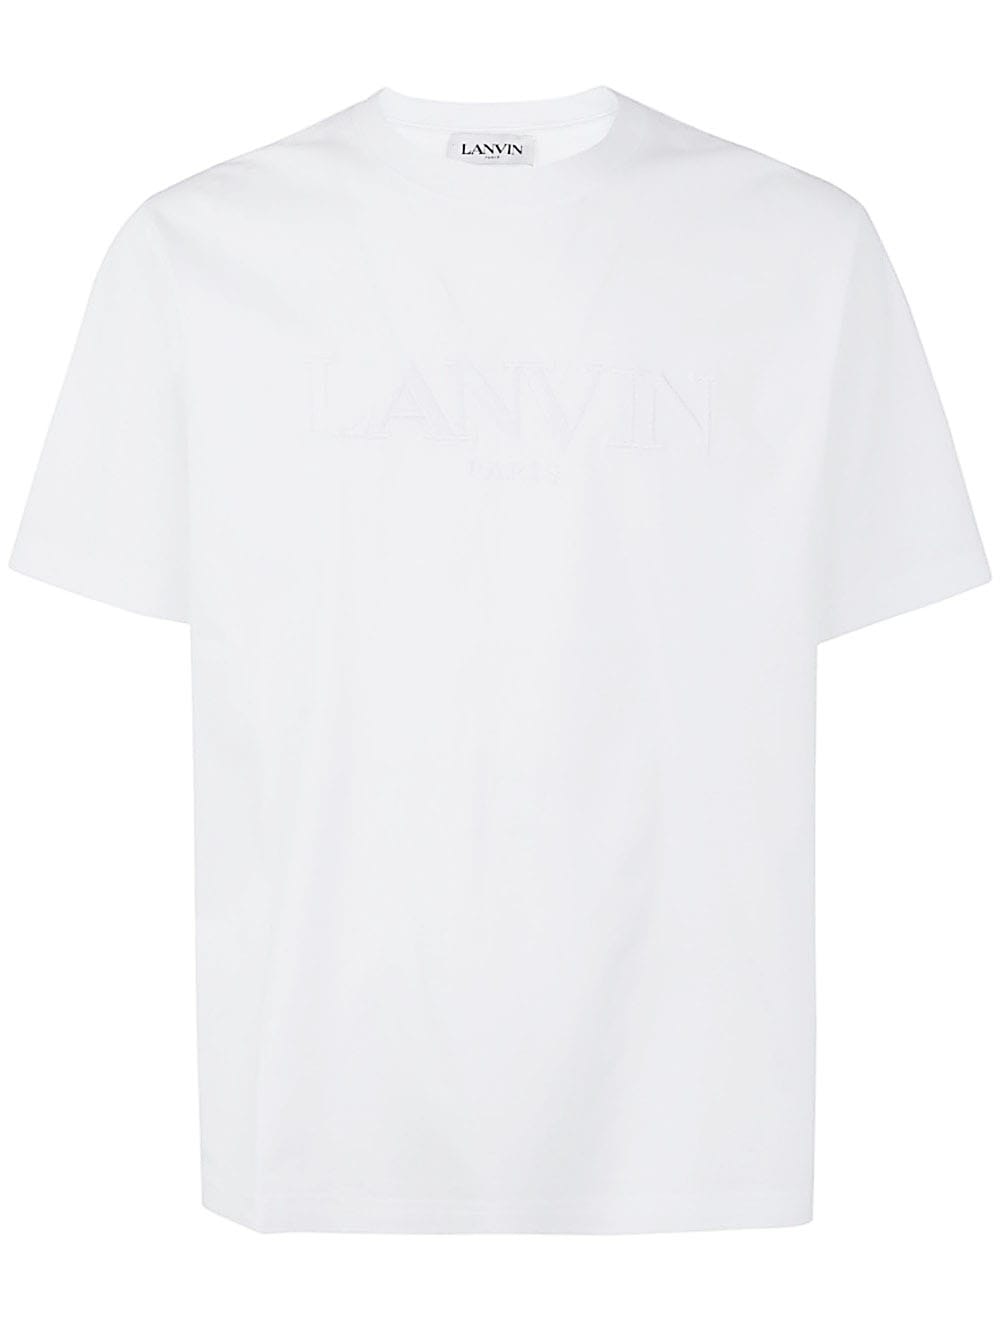 Lanvin Paris Classic T-shirt In Optic White